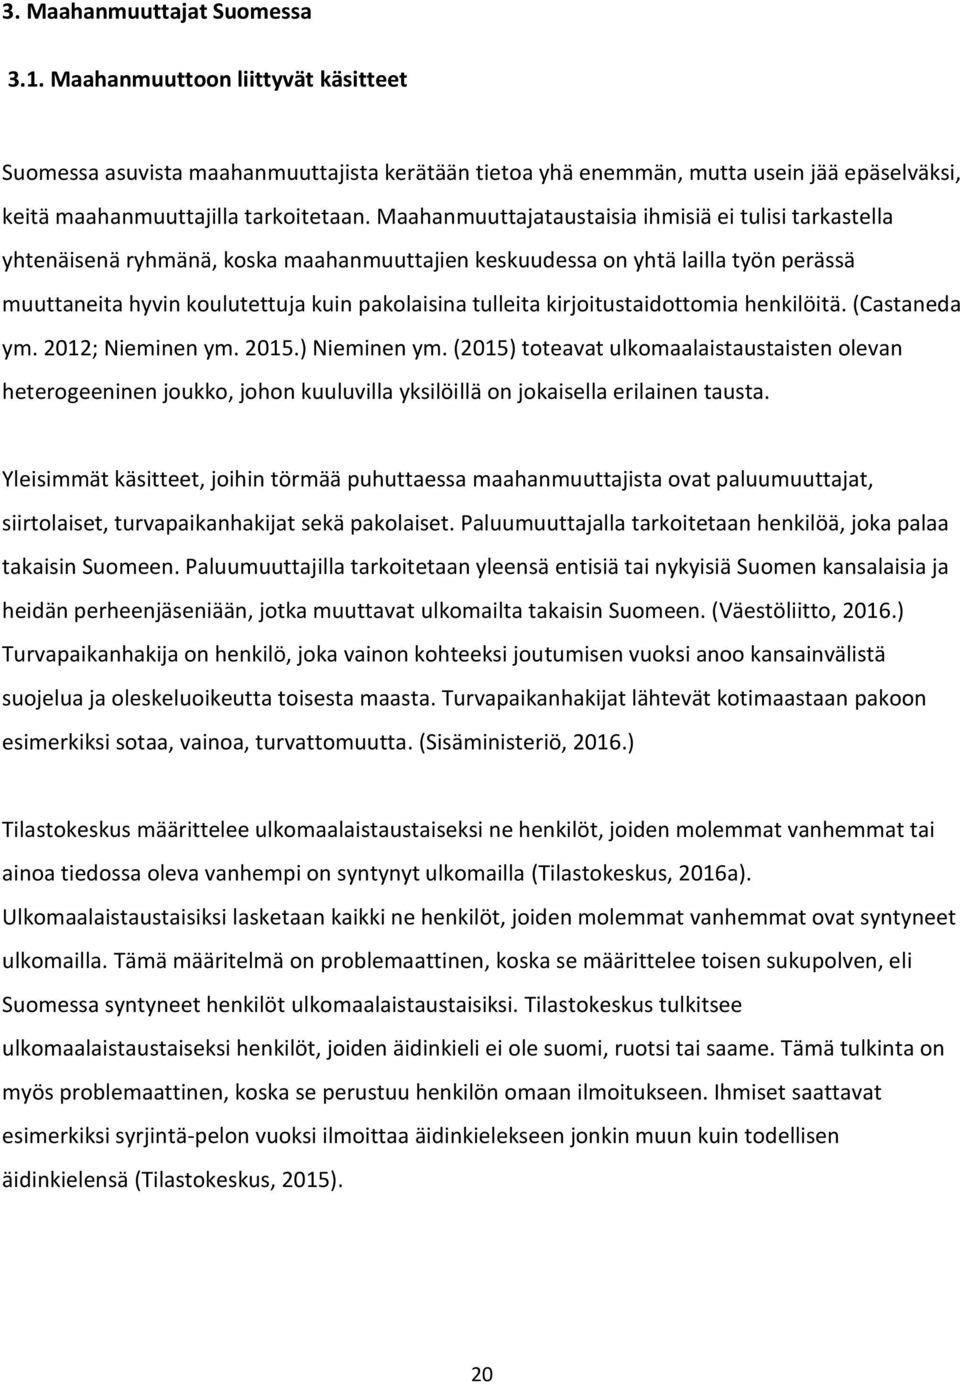 kirjoitustaidottomia henkilöitä. (Castaneda ym. 2012; Nieminen ym. 2015.) Nieminen ym.